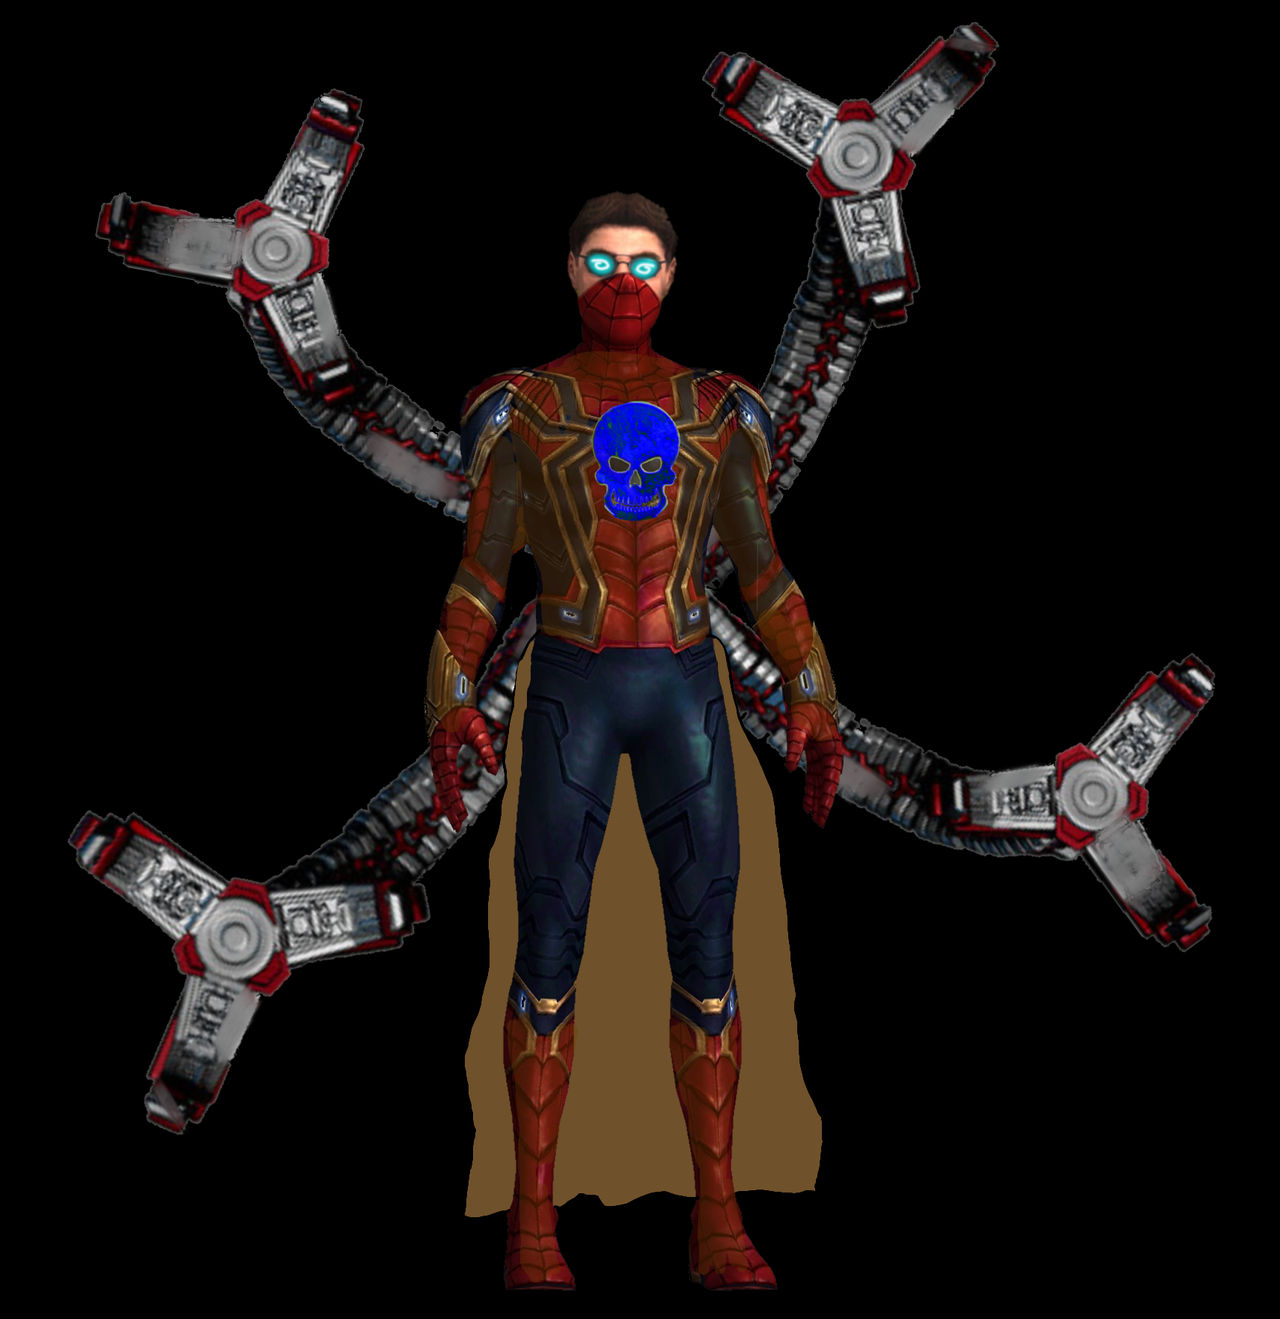 Spiderman v doctor octopus by itsharman on DeviantArt